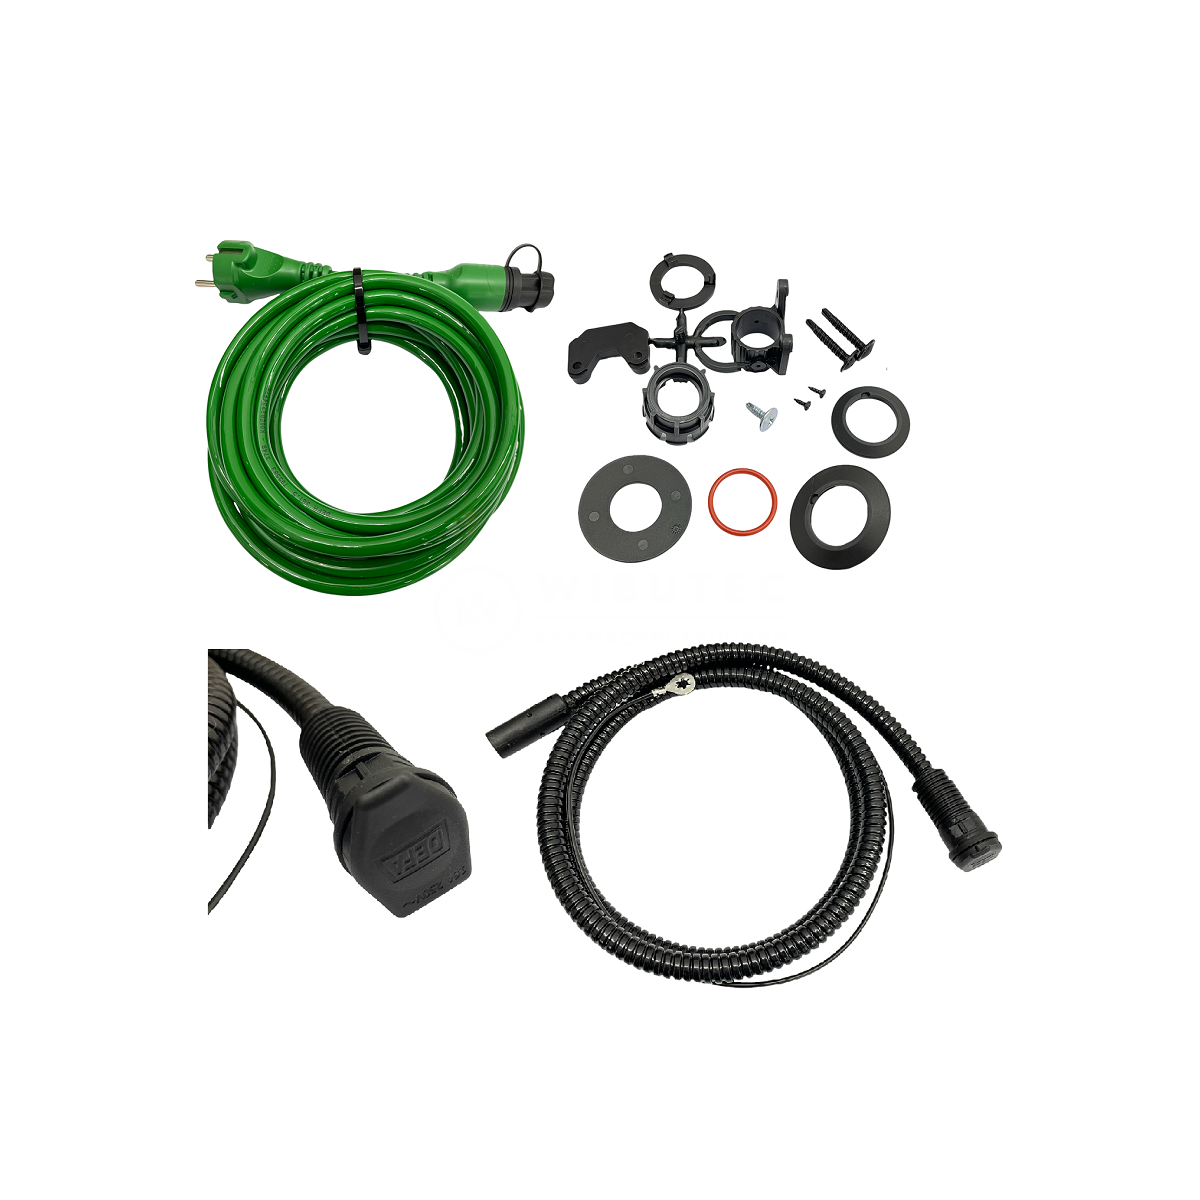 Zestaw kabli przyłączeniowych DEFA 230 V, odpowiedni do SafeStart,  MultiCharger i innych zastosowań, w tym kabel zewnętrzny 5 m, 99,00 €